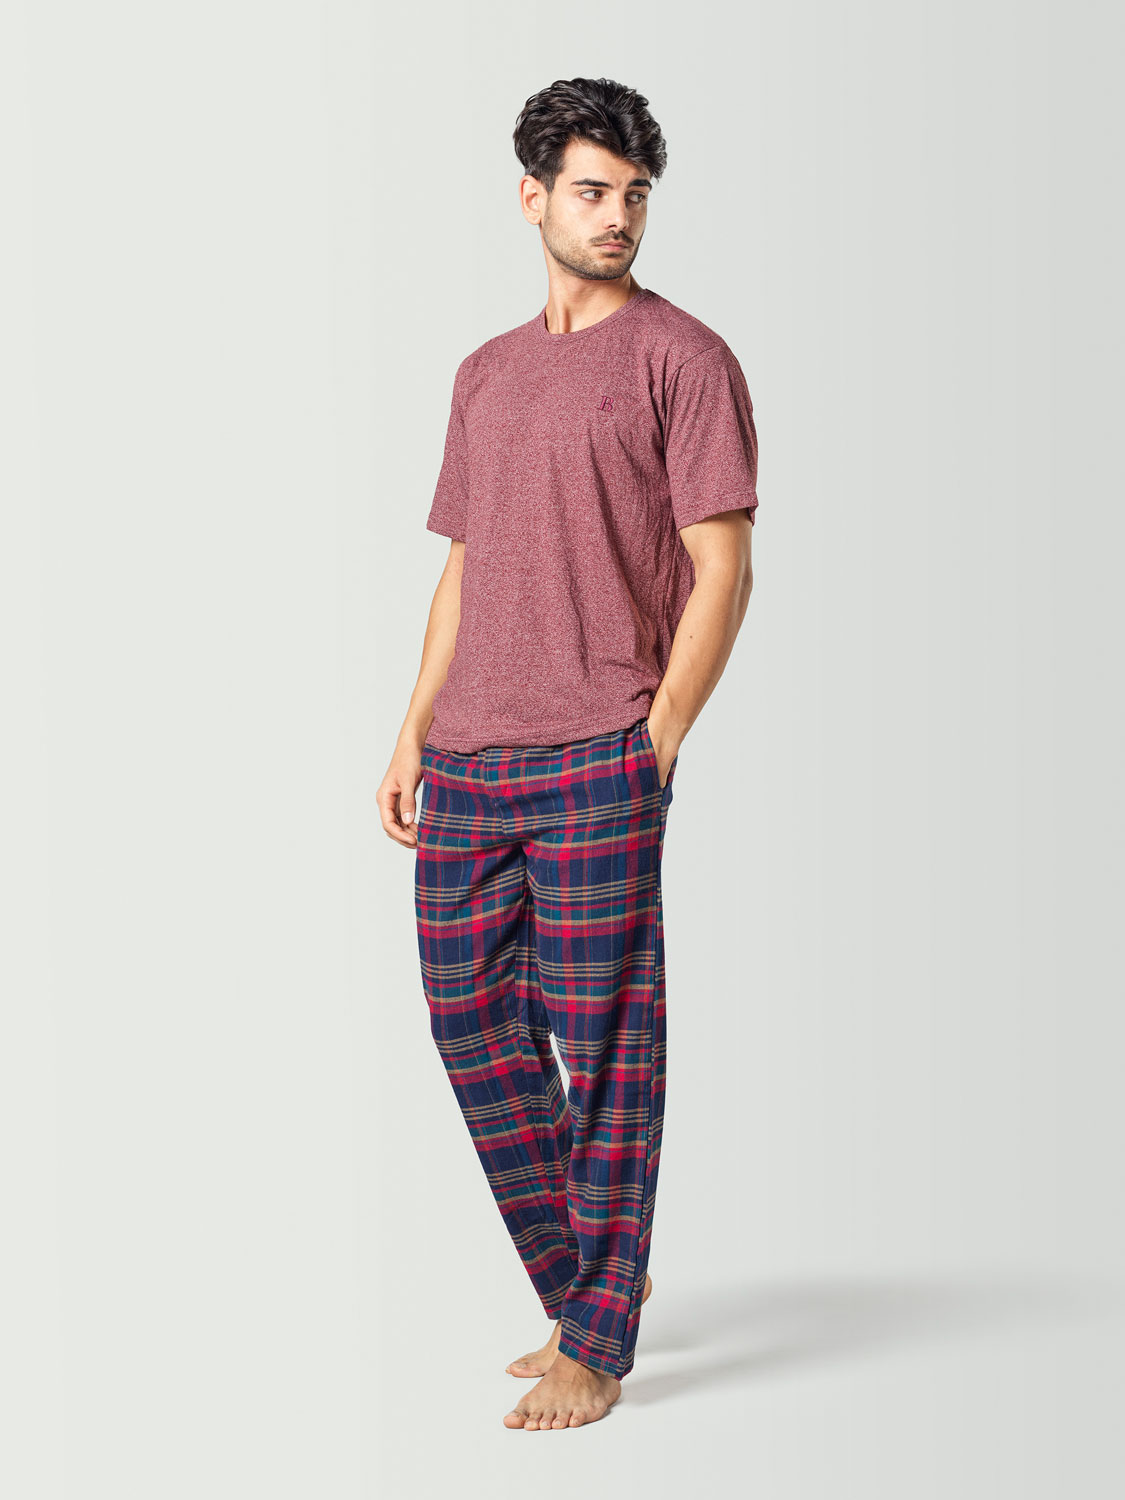 Pijama para hombre con camiseta de manga corta roja y pantalón a cuadros azul y rojo